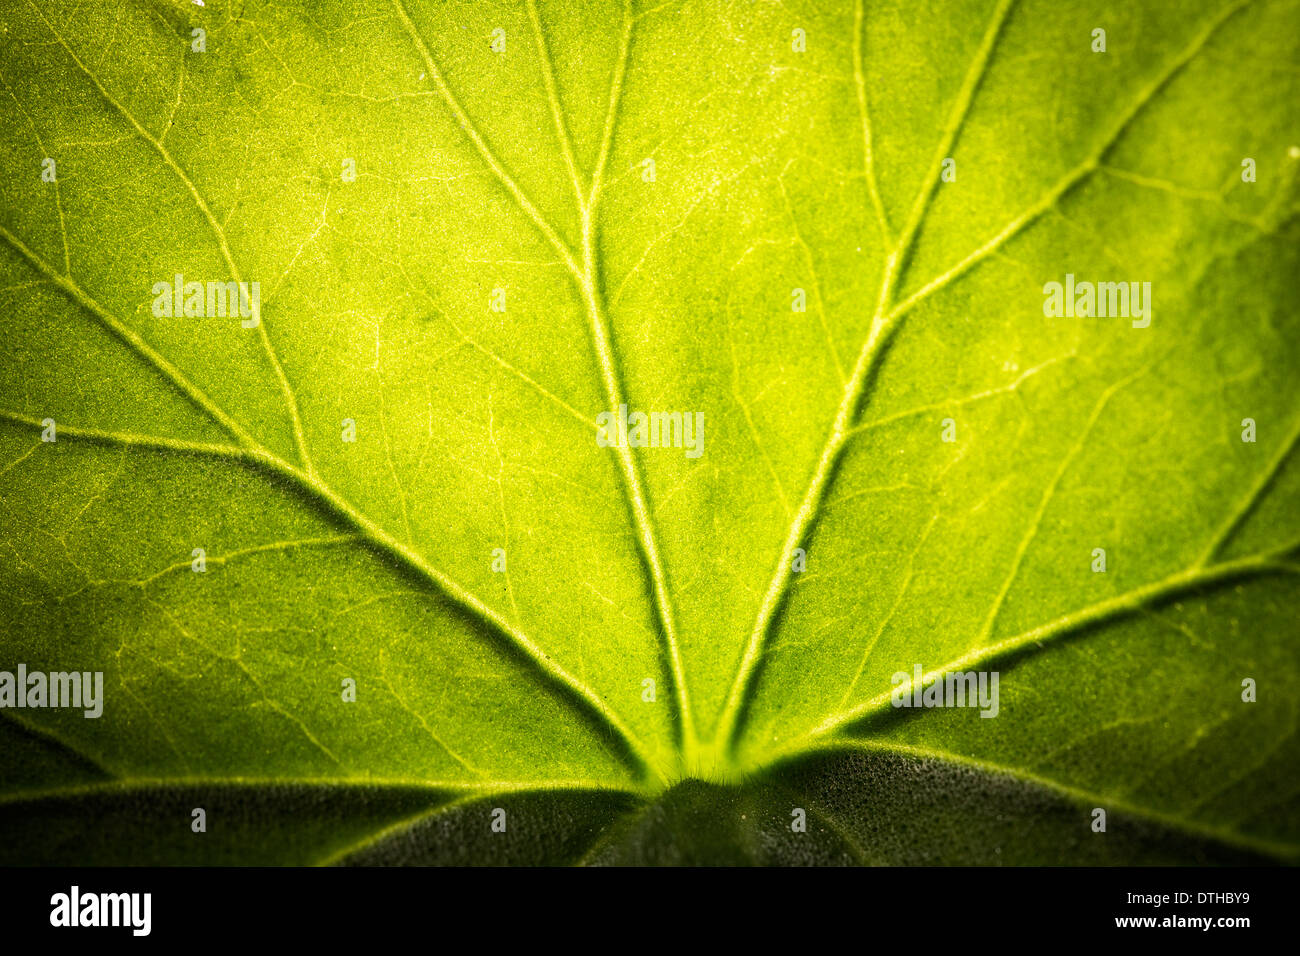 La texture des feuilles de près. Fond vert Banque D'Images